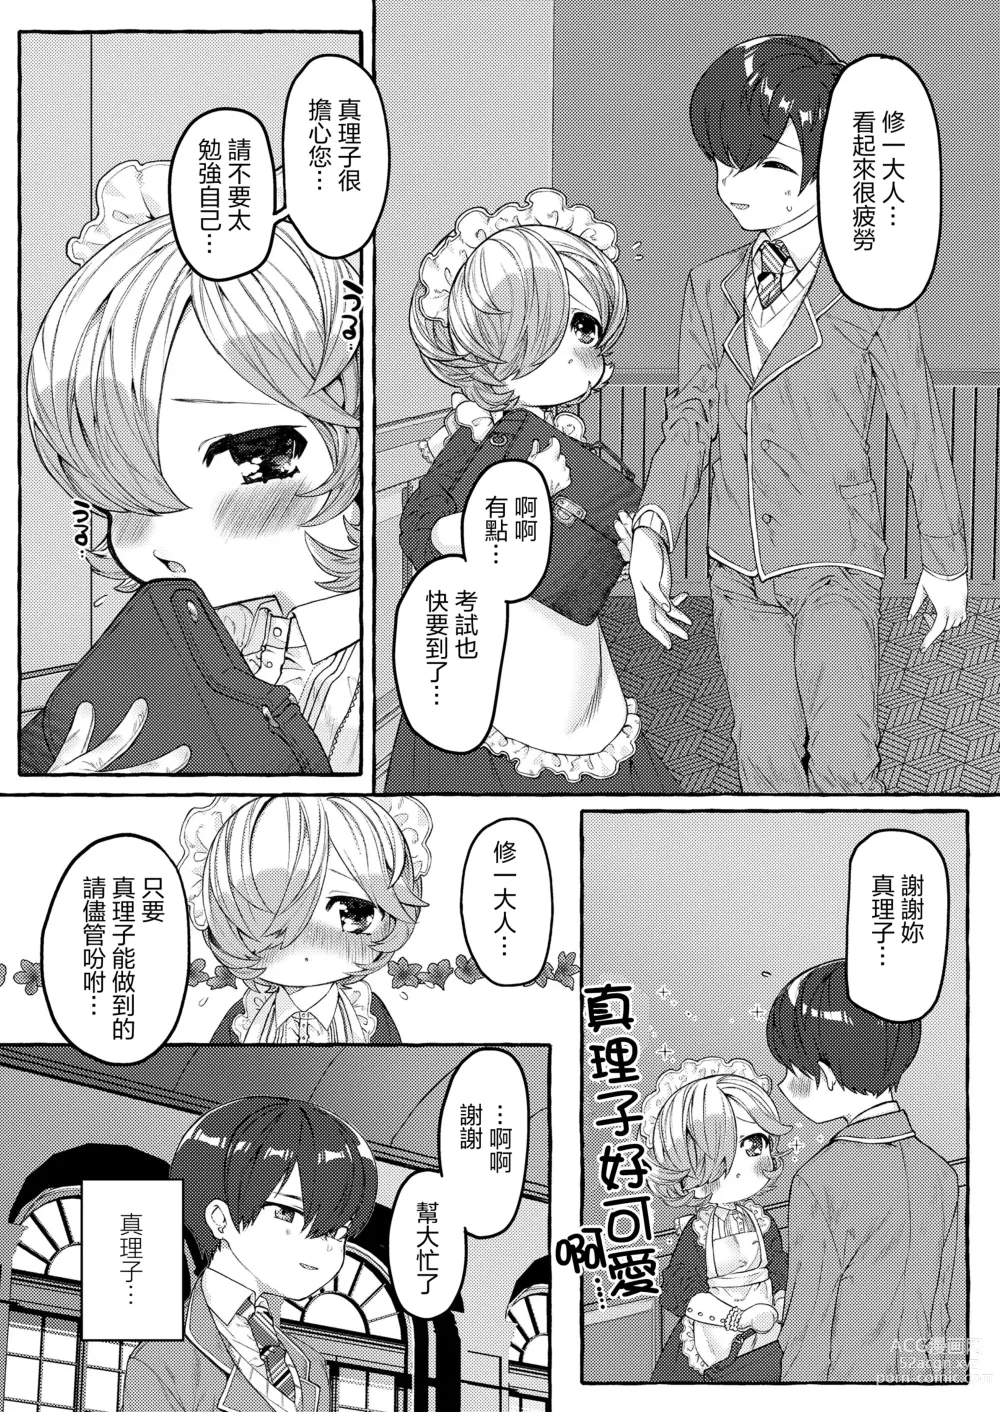 Page 2 of doujinshi Mariko to Syu-sama